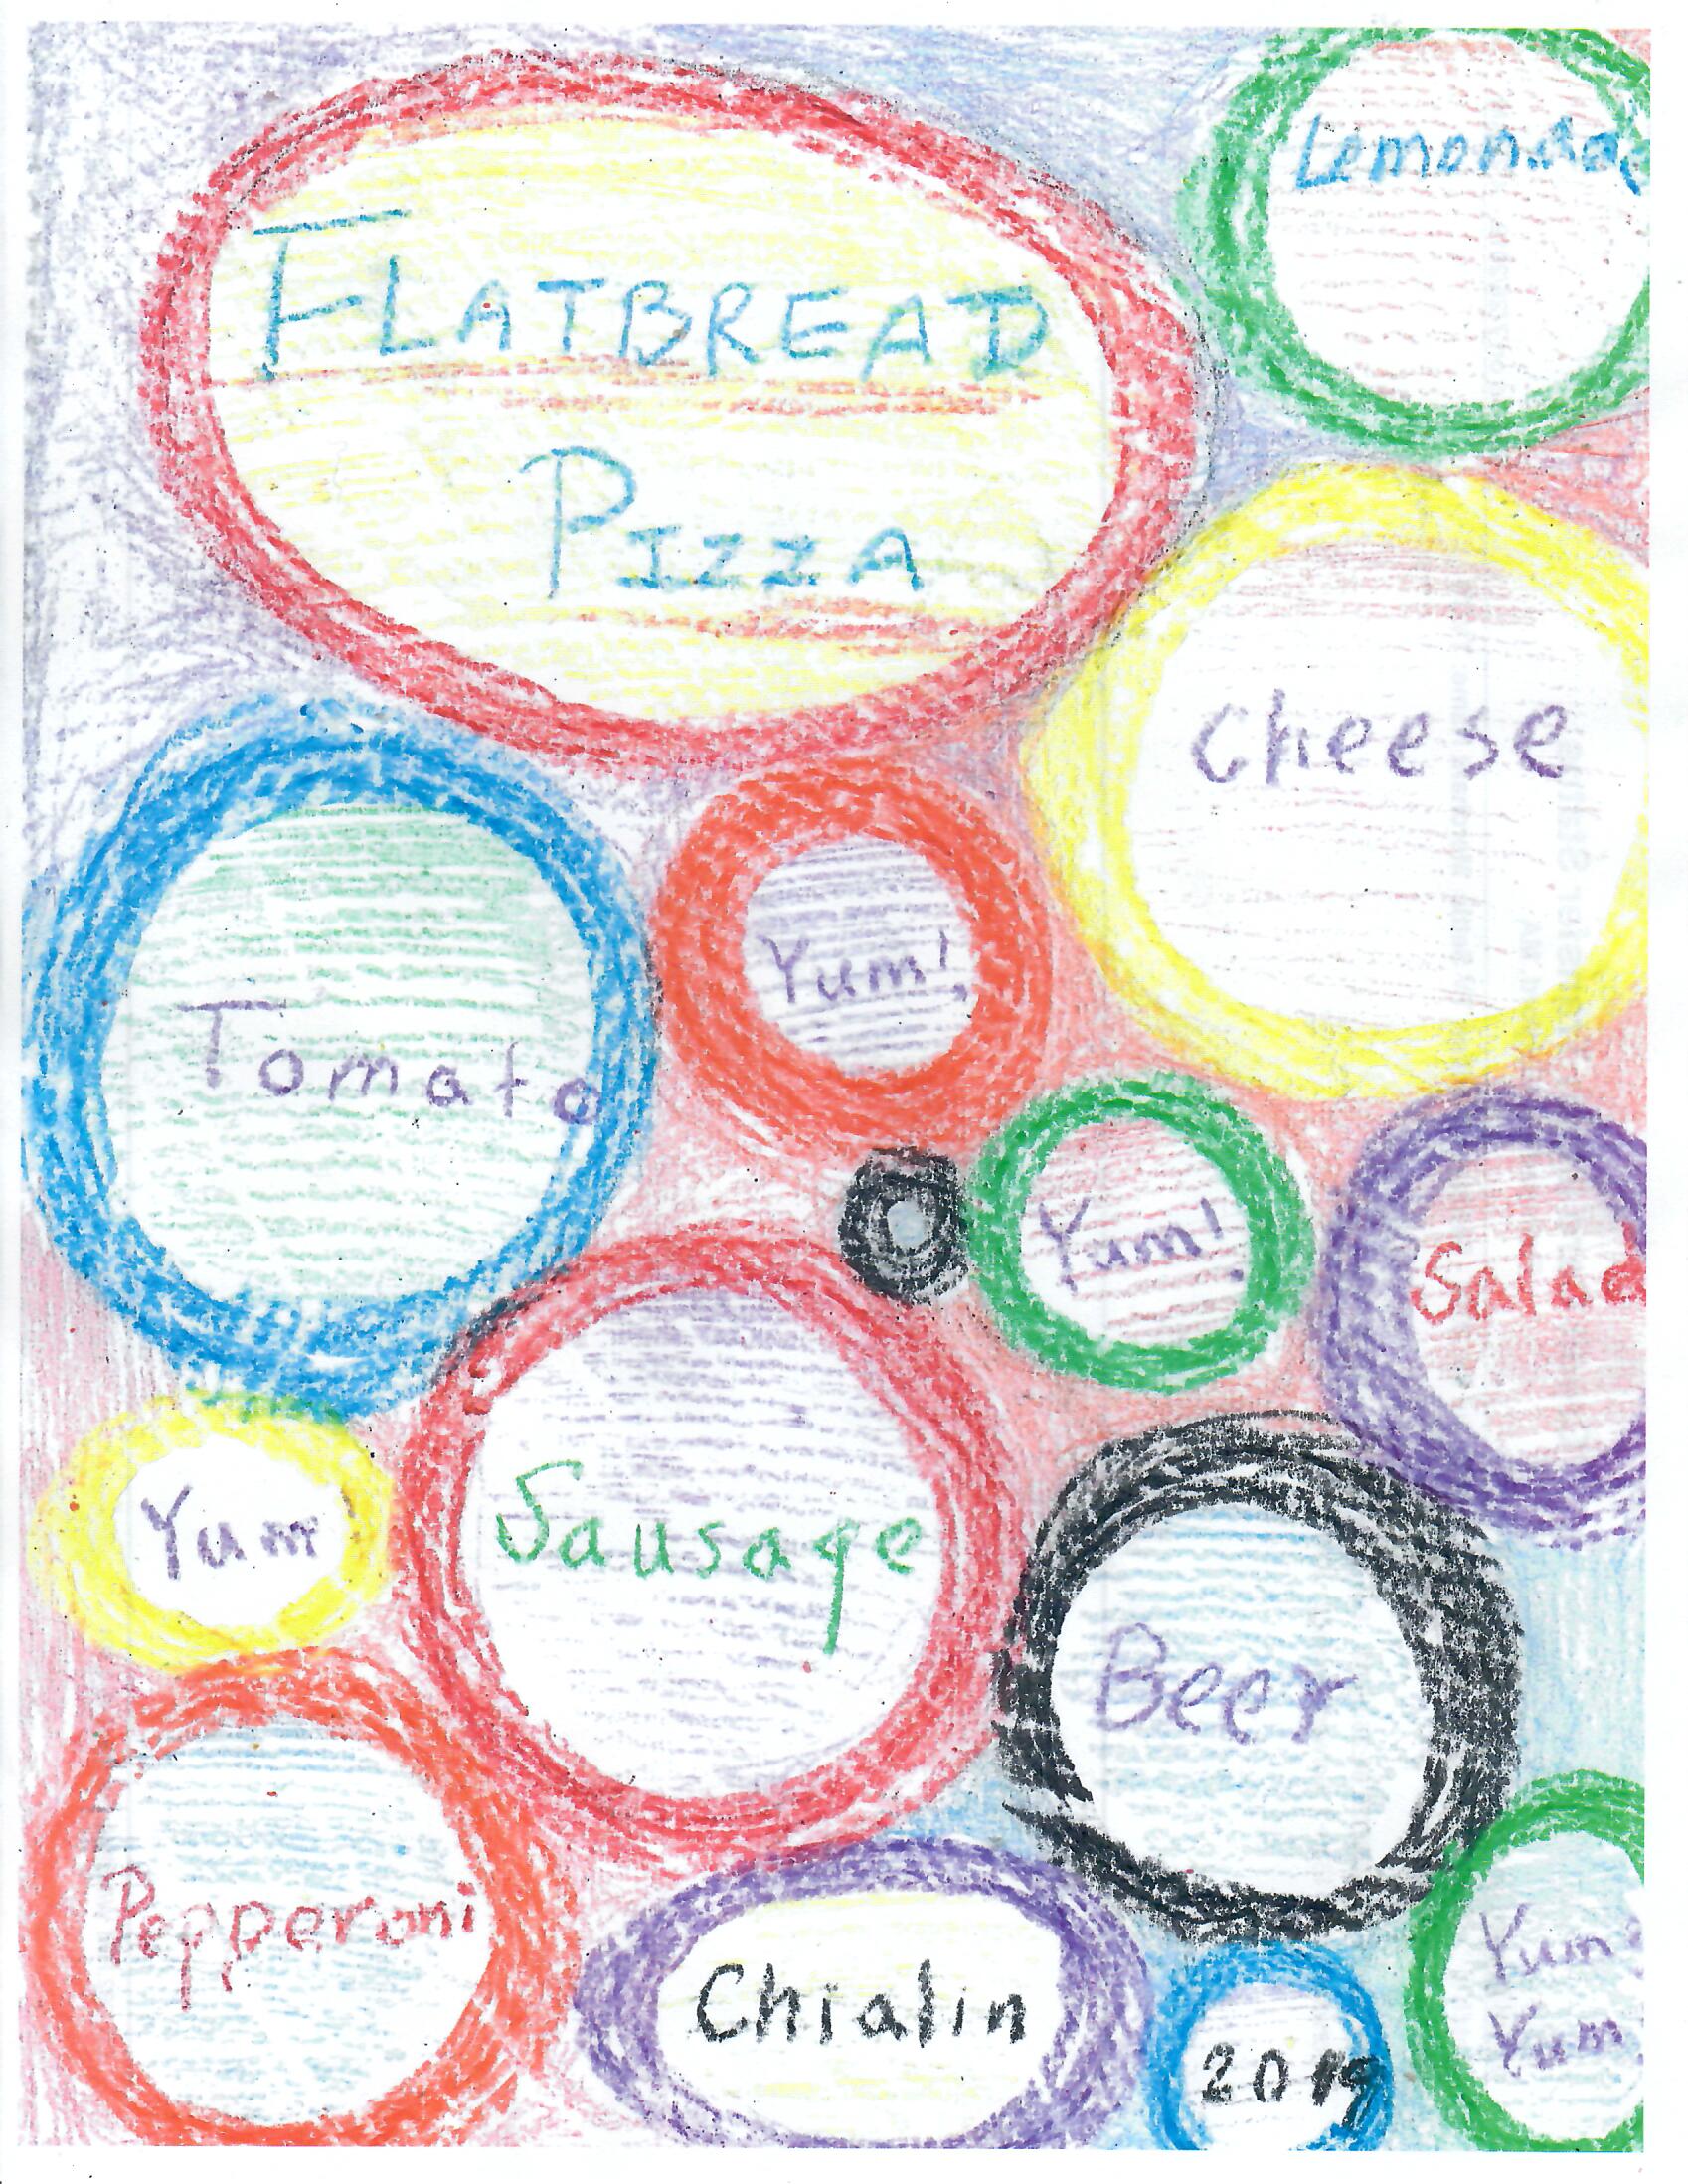 Kid's menu cover art